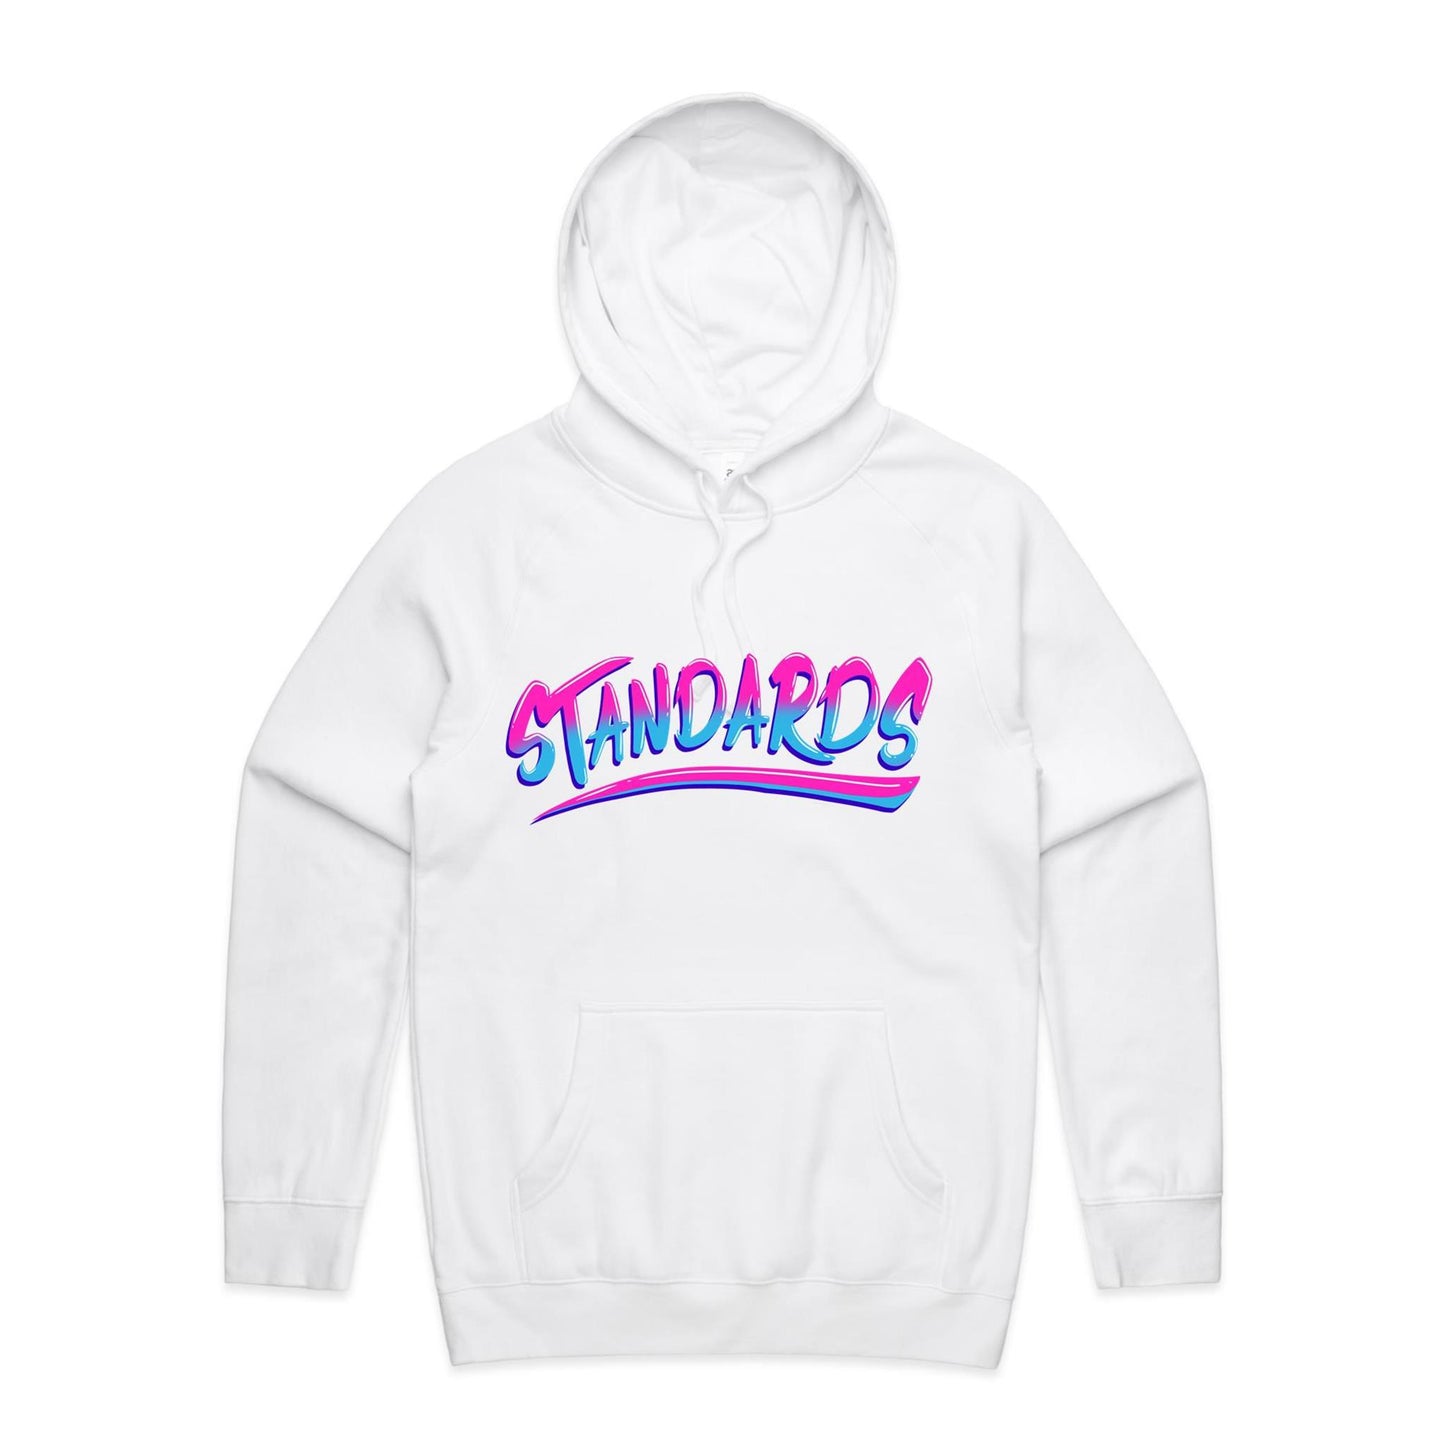 Standards Hoodie - Supply